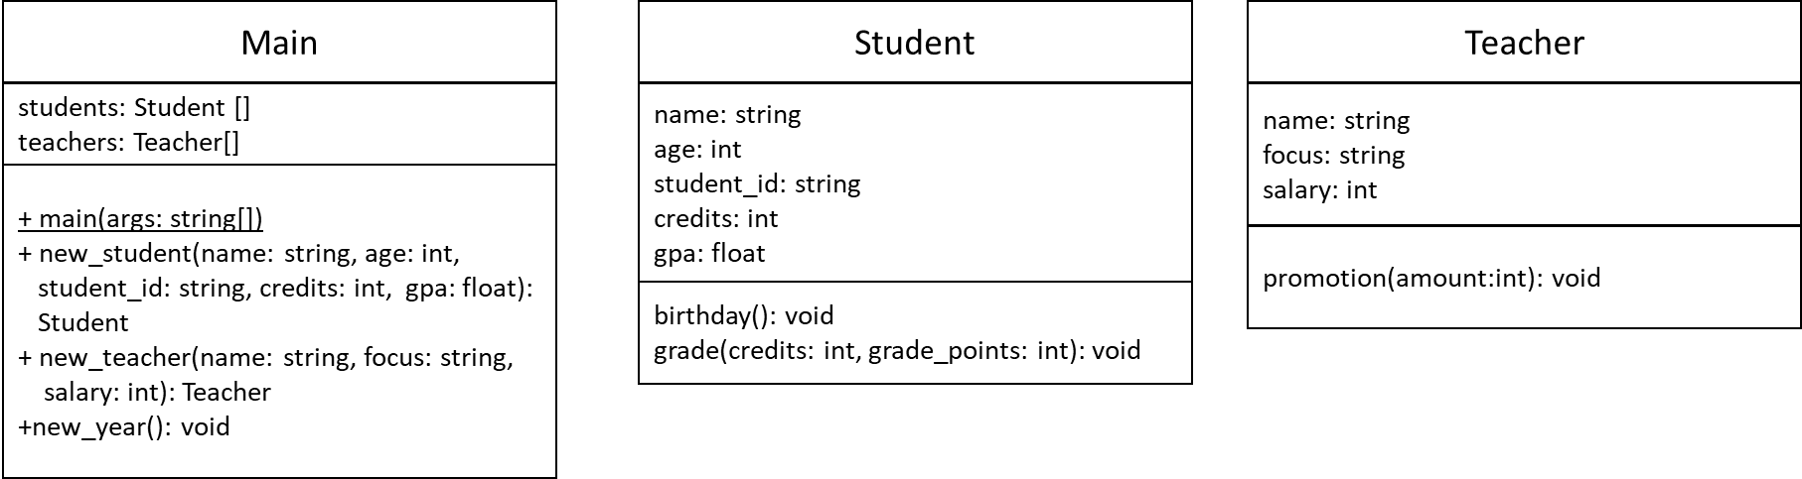 Teacher and Student UML Diagram